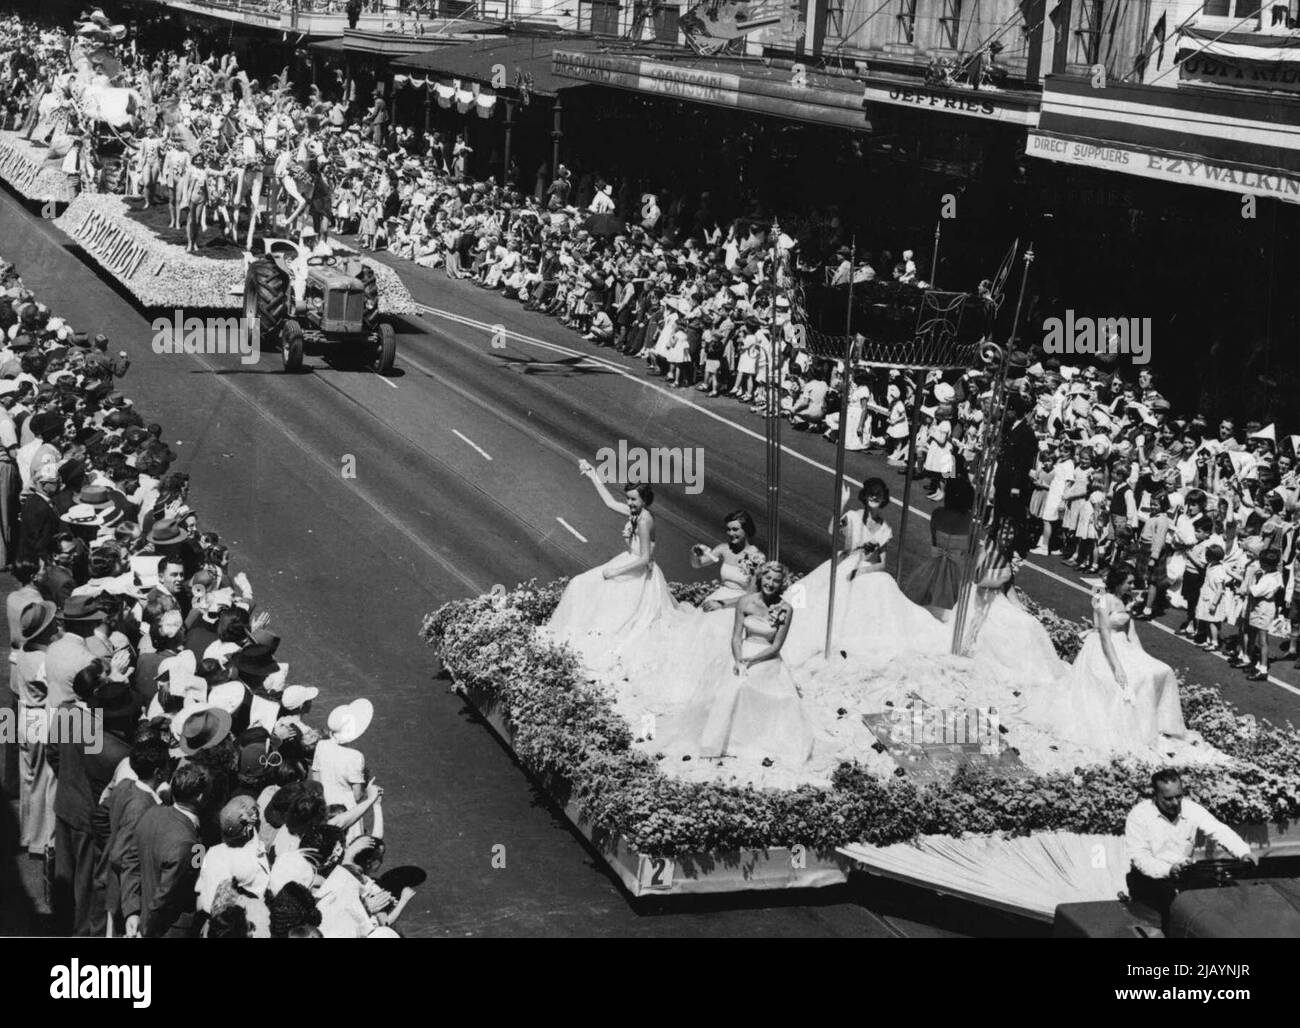 Le soleil brille aujourd'hui sur la scène florale de Melbourne. Ici, de jolies filles, vêtues de robes coulées de leurs flotteurs fleuris à la foule qui a rempli Swanston Street. 29 mars 1954. Banque D'Images